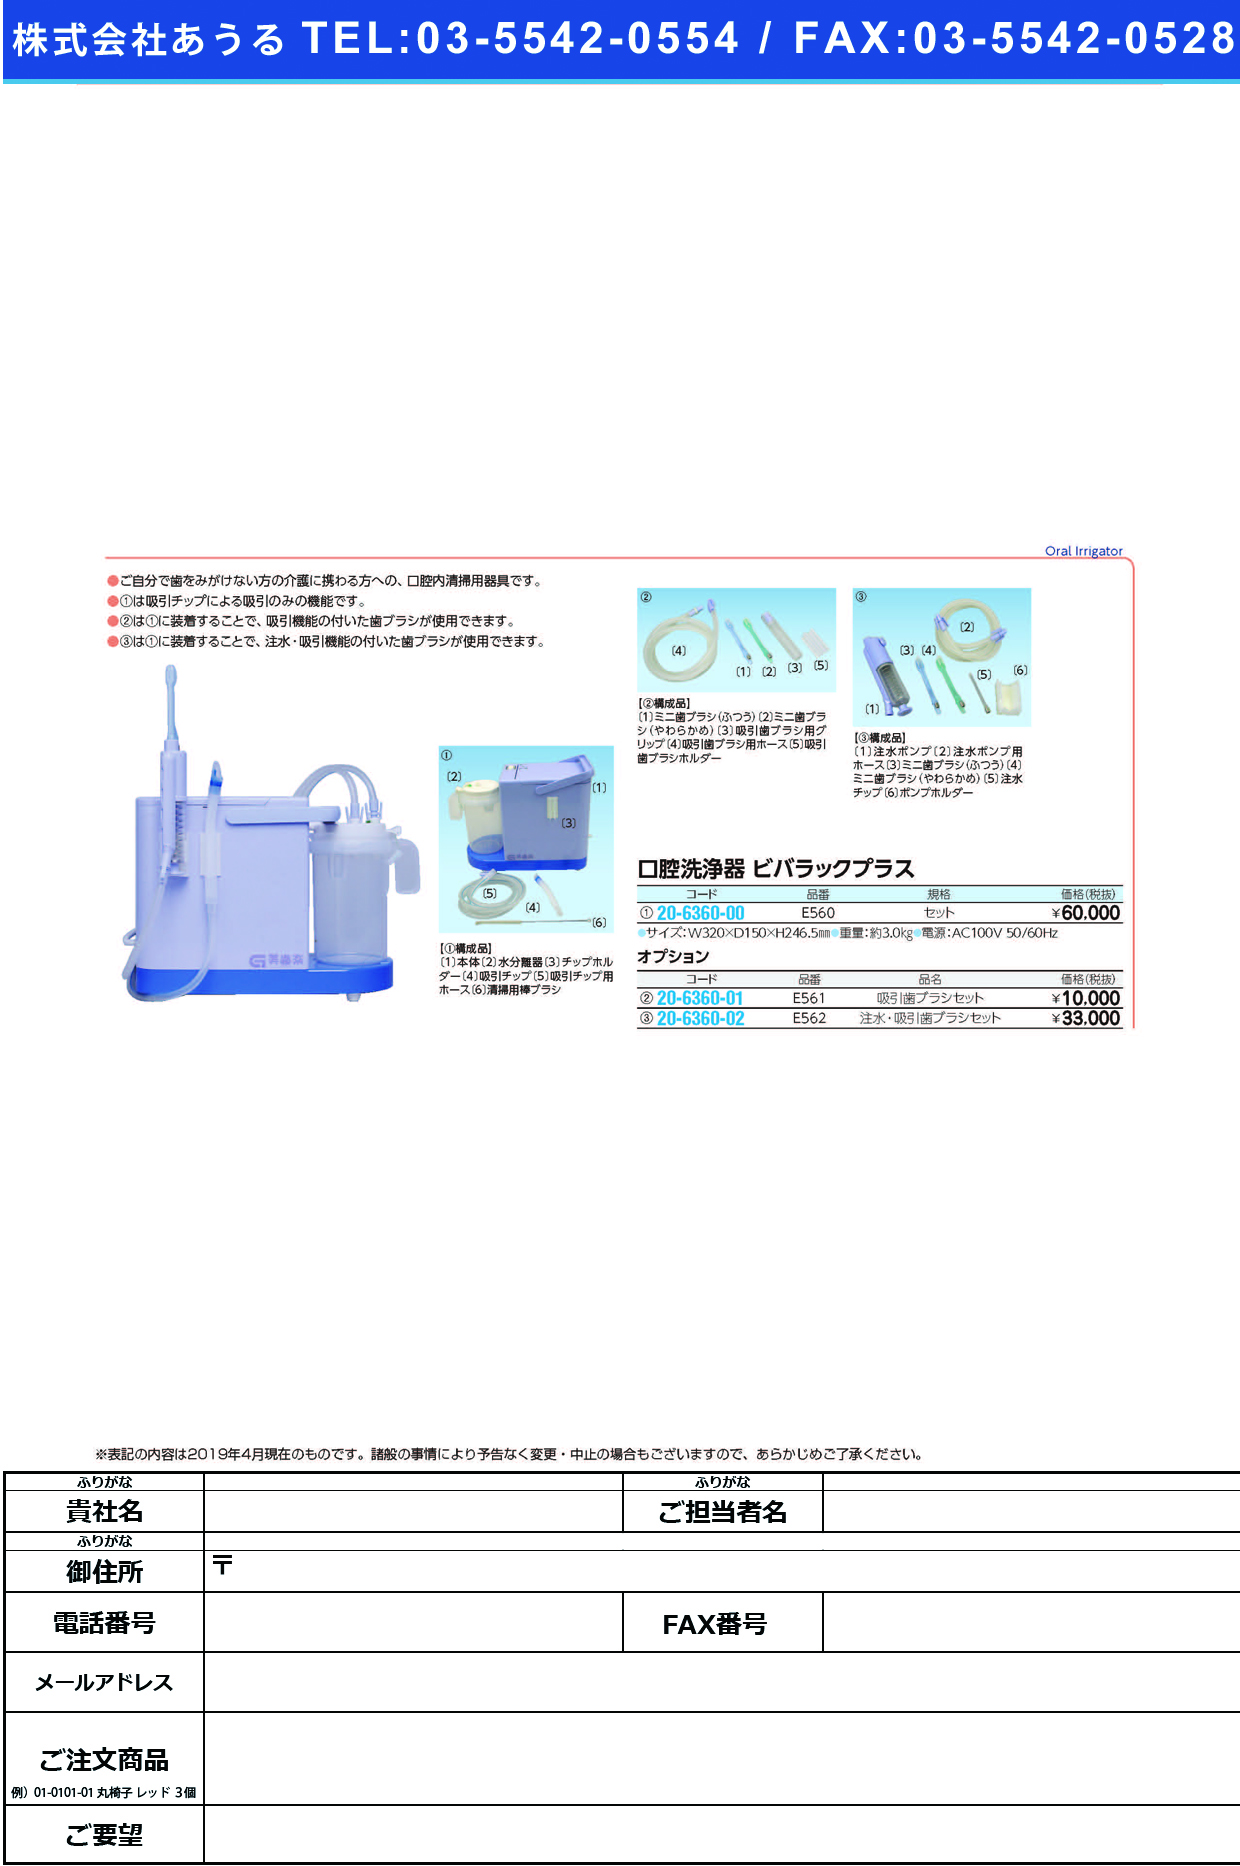 (20-6360-01)吸引歯ブラシセット E561(ﾋﾞﾊﾞﾗｯｸﾌﾟﾗｽﾖｳ) ｷｭｳｲﾝﾊﾌﾞﾗｼｾｯﾄ【1組単位】【2019年カタログ商品】